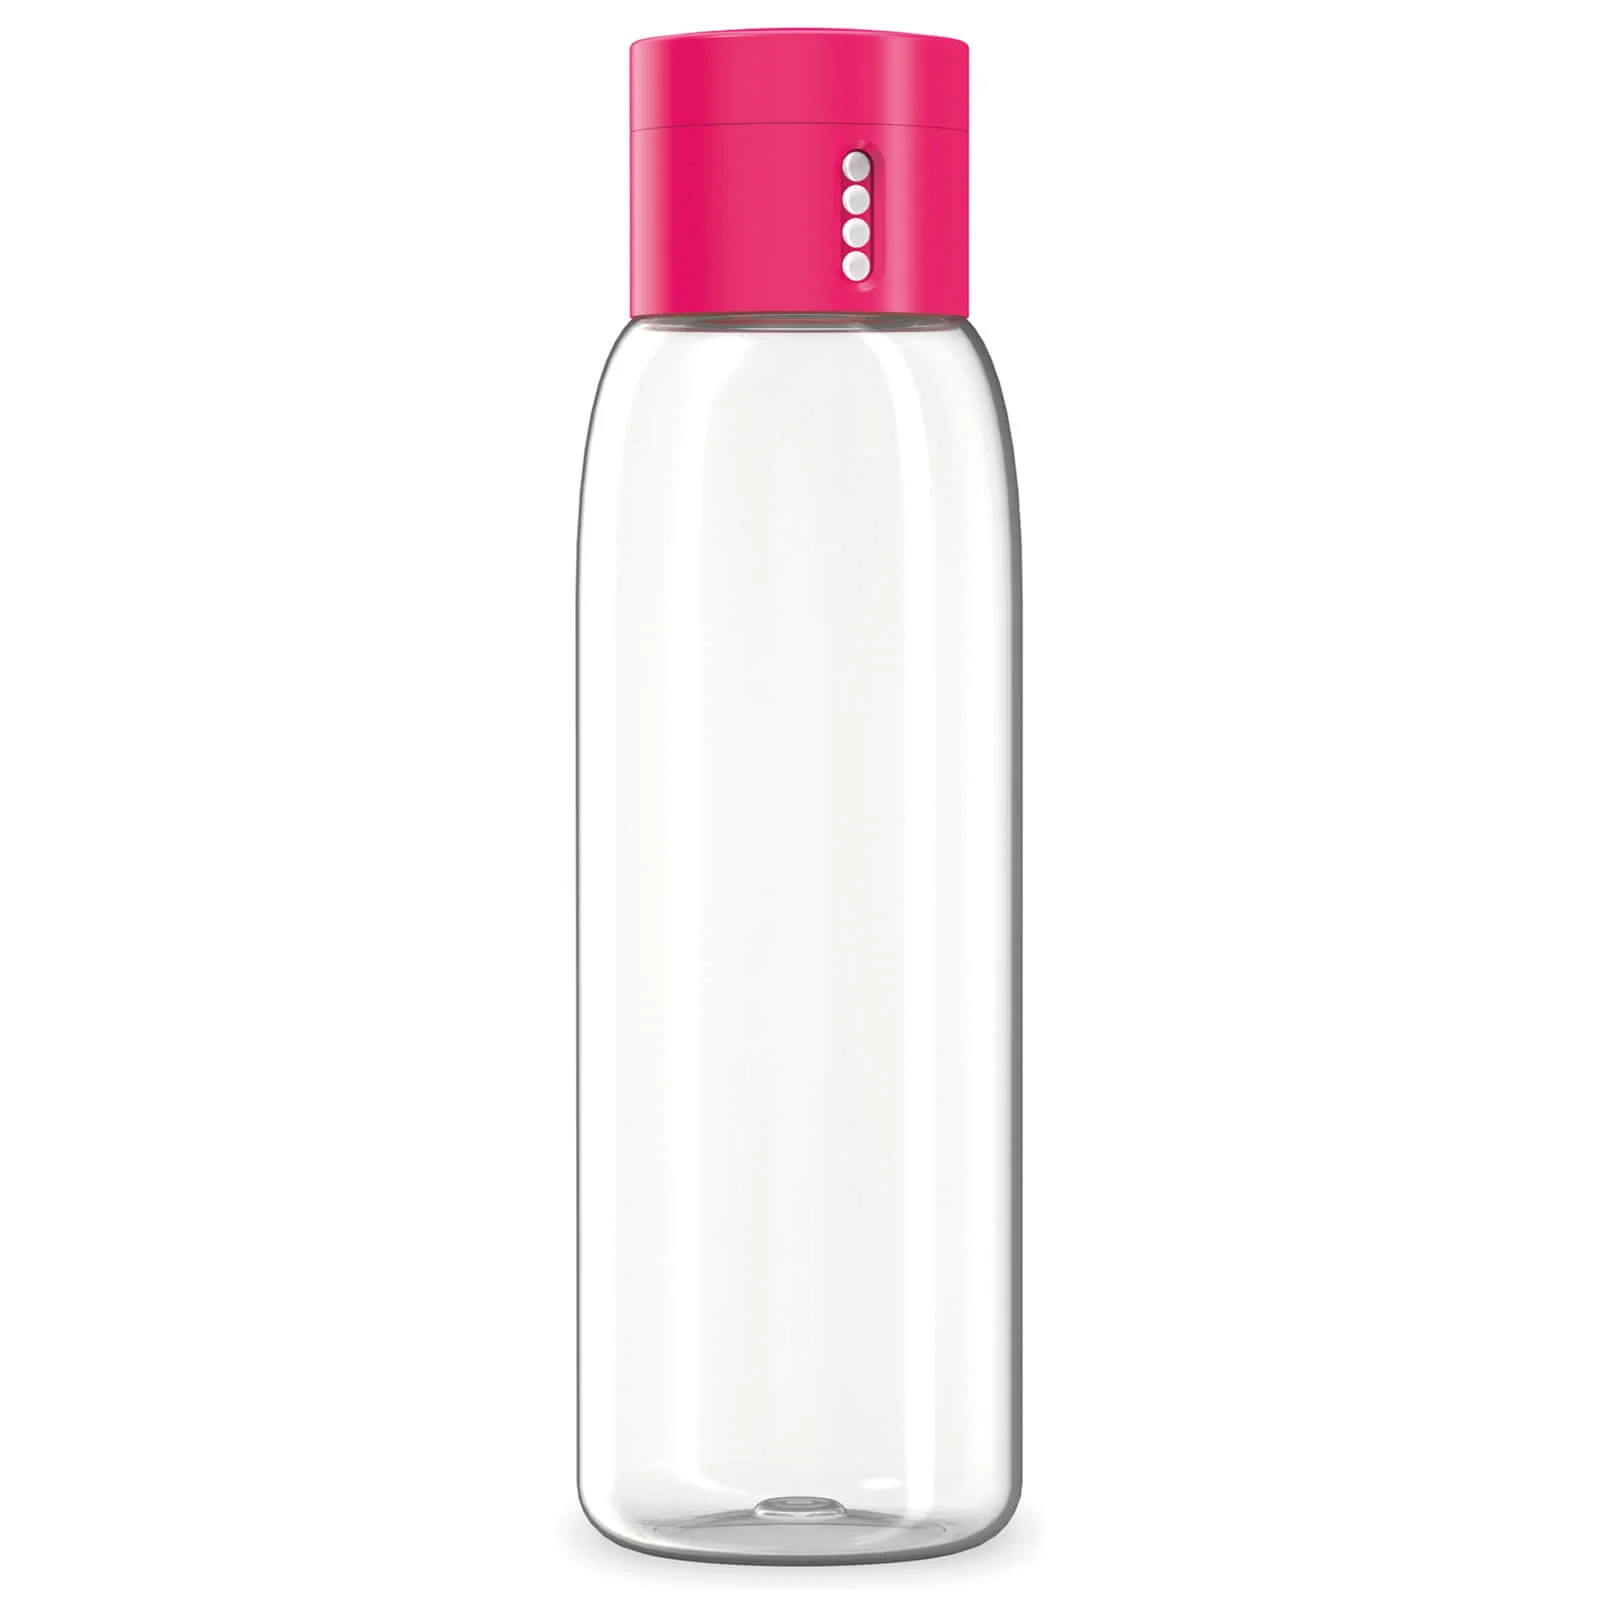 Joseph Joseph Dot Hydration-Tracking Water Bottle - Pink 600ml Image 1